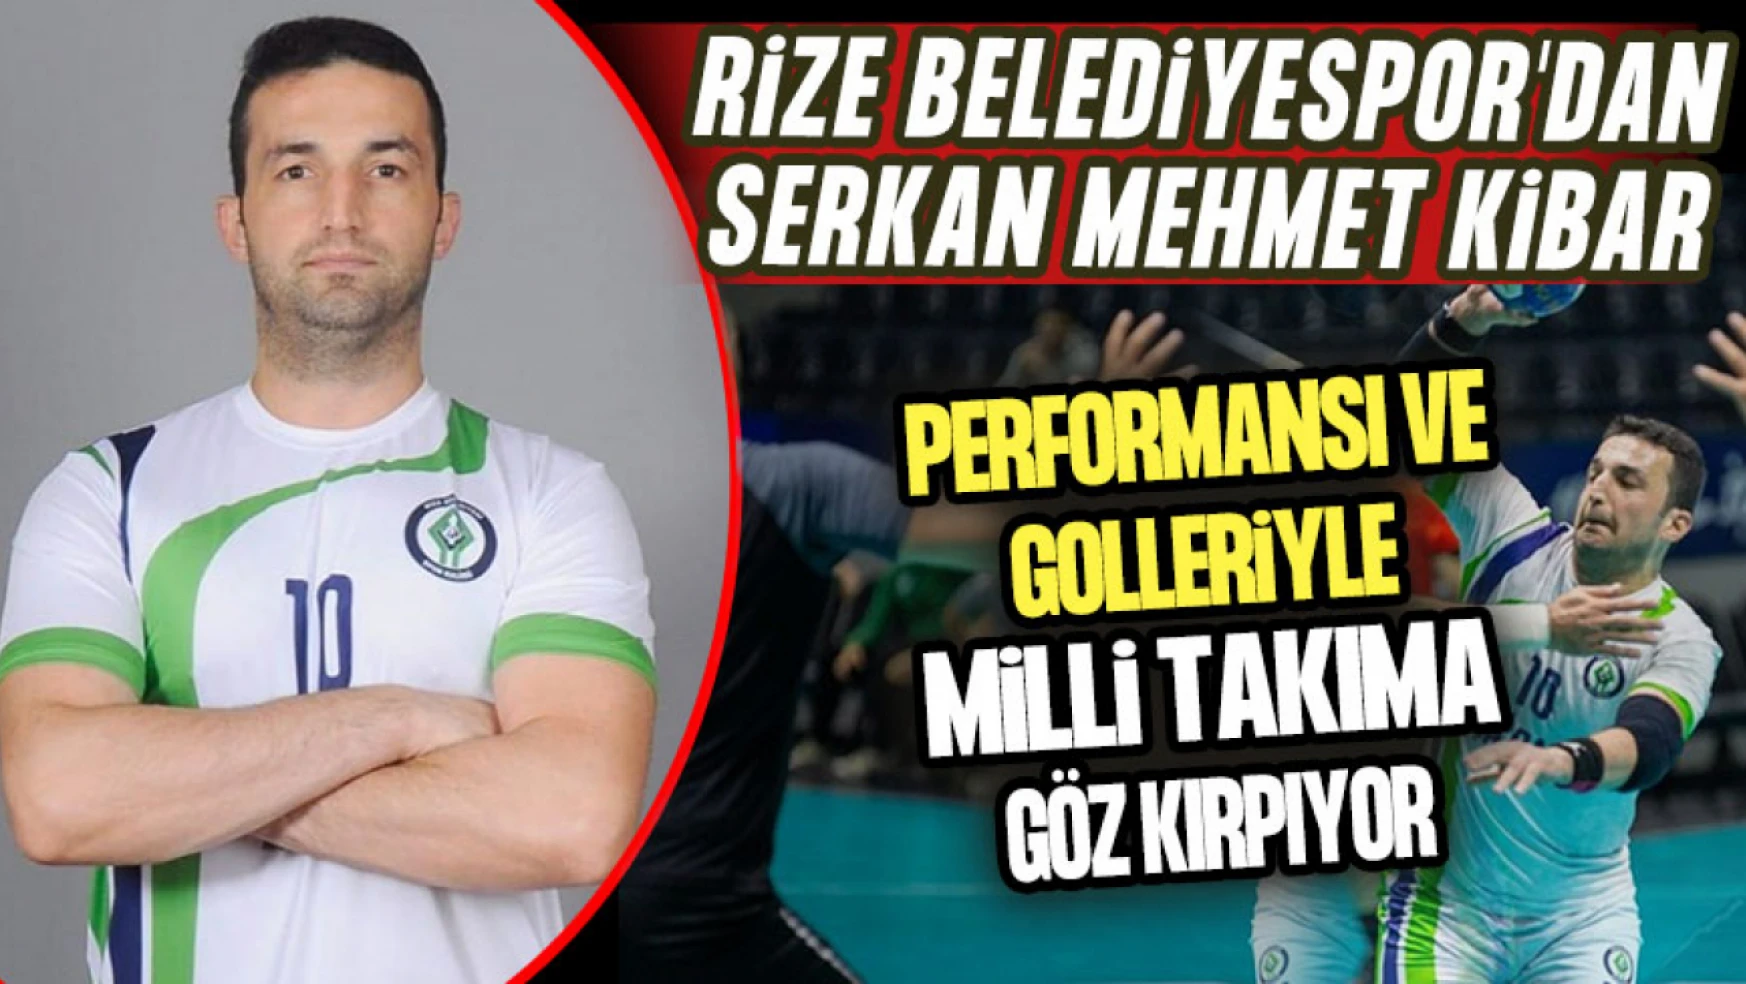 Rize Belediyespor'dan Serkan Mehmet Kibar, Performansı ve Golleriyle Milli Takıma Göz Kırpıyor!